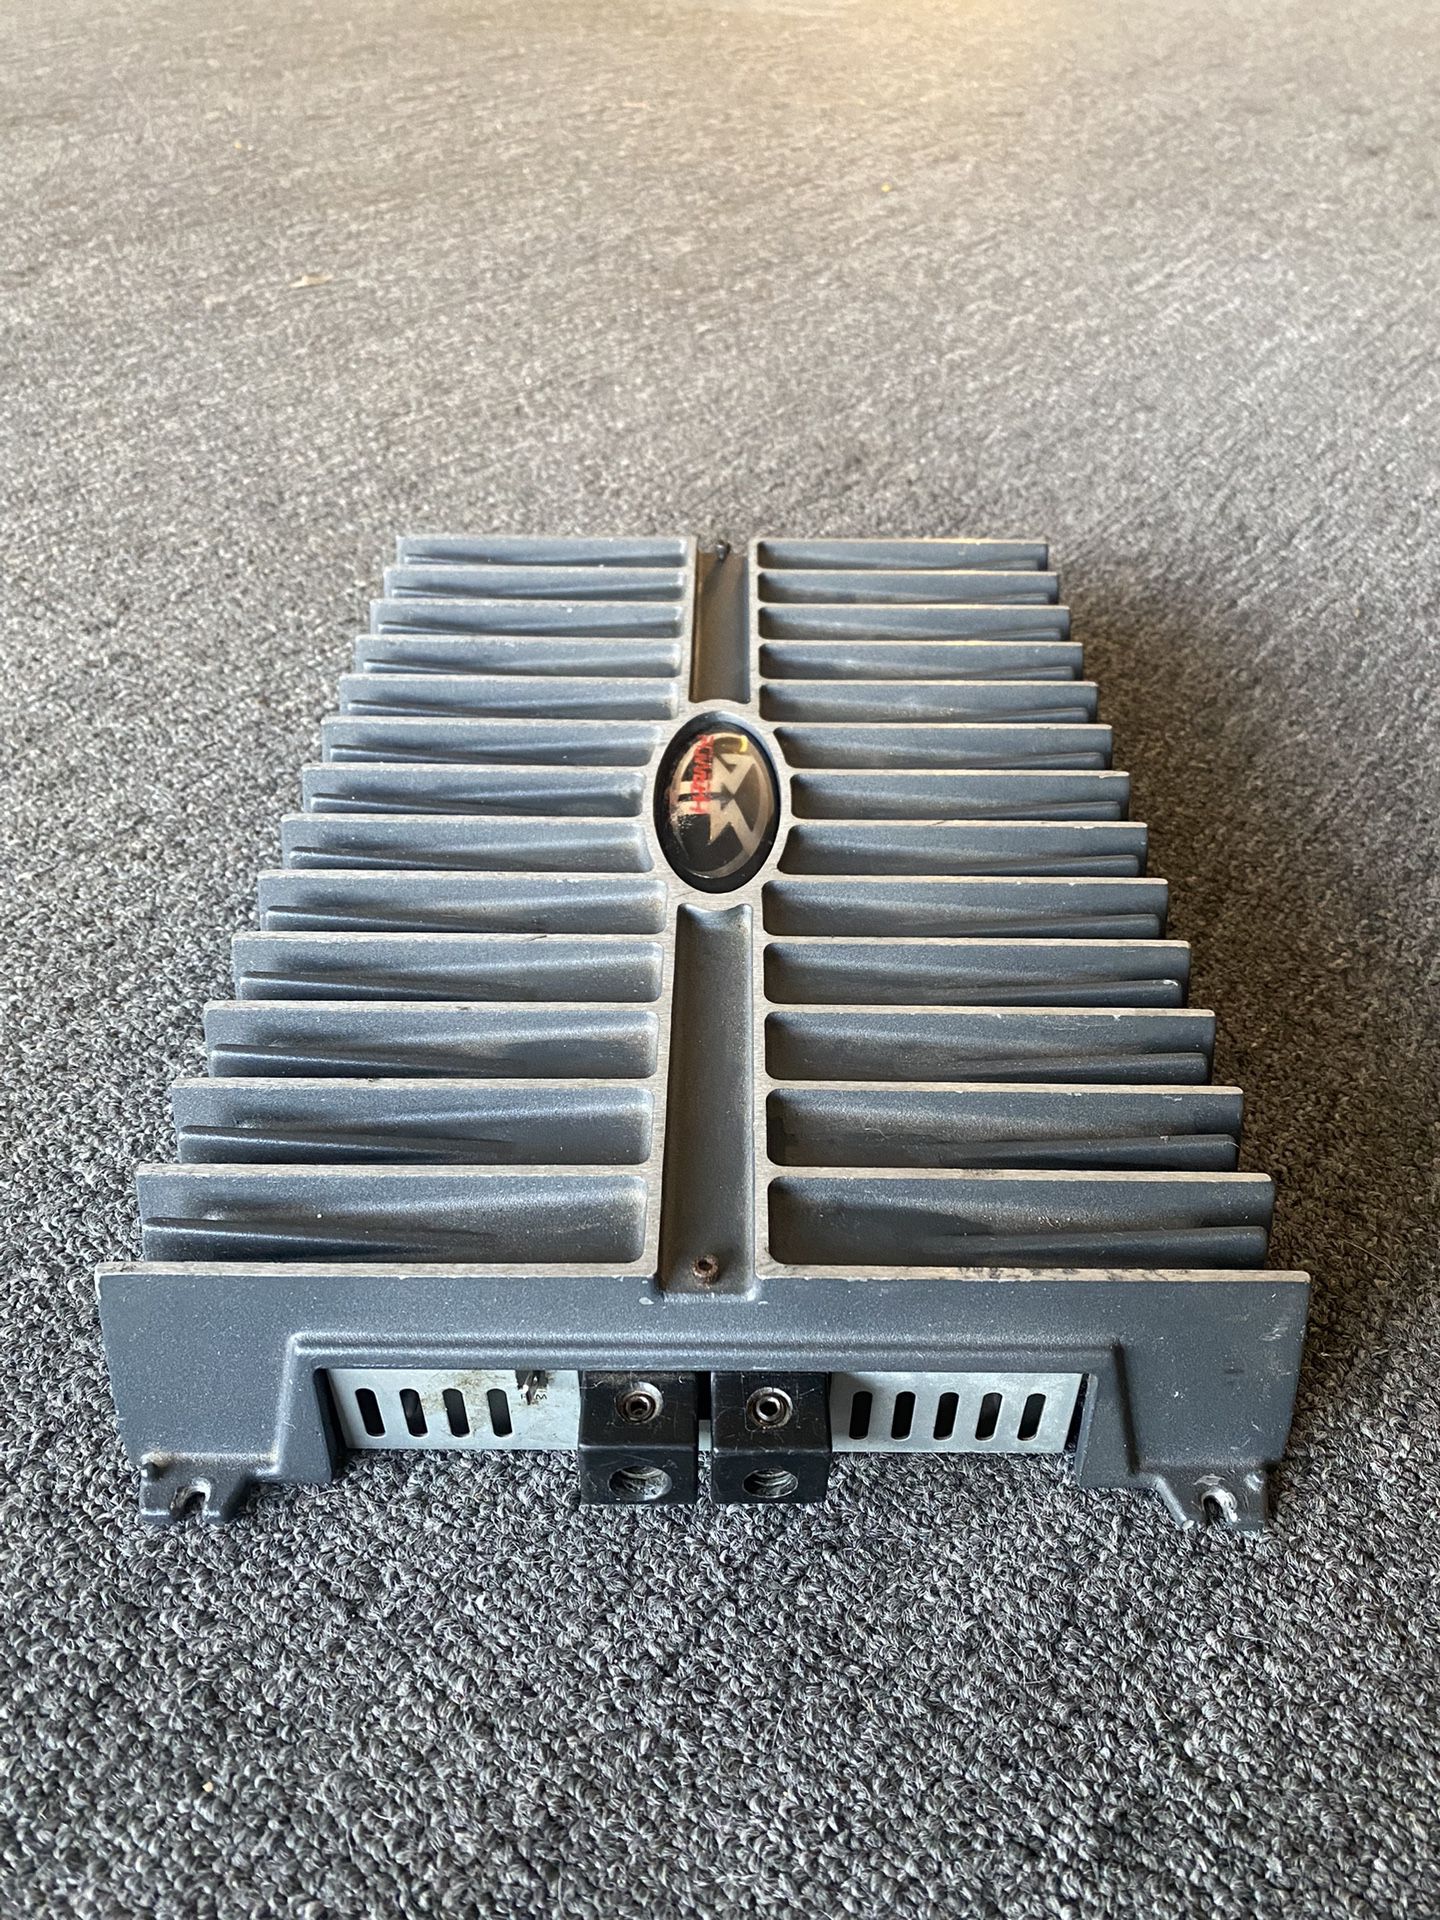 Rockford Fosgate Power 750s Amplifier